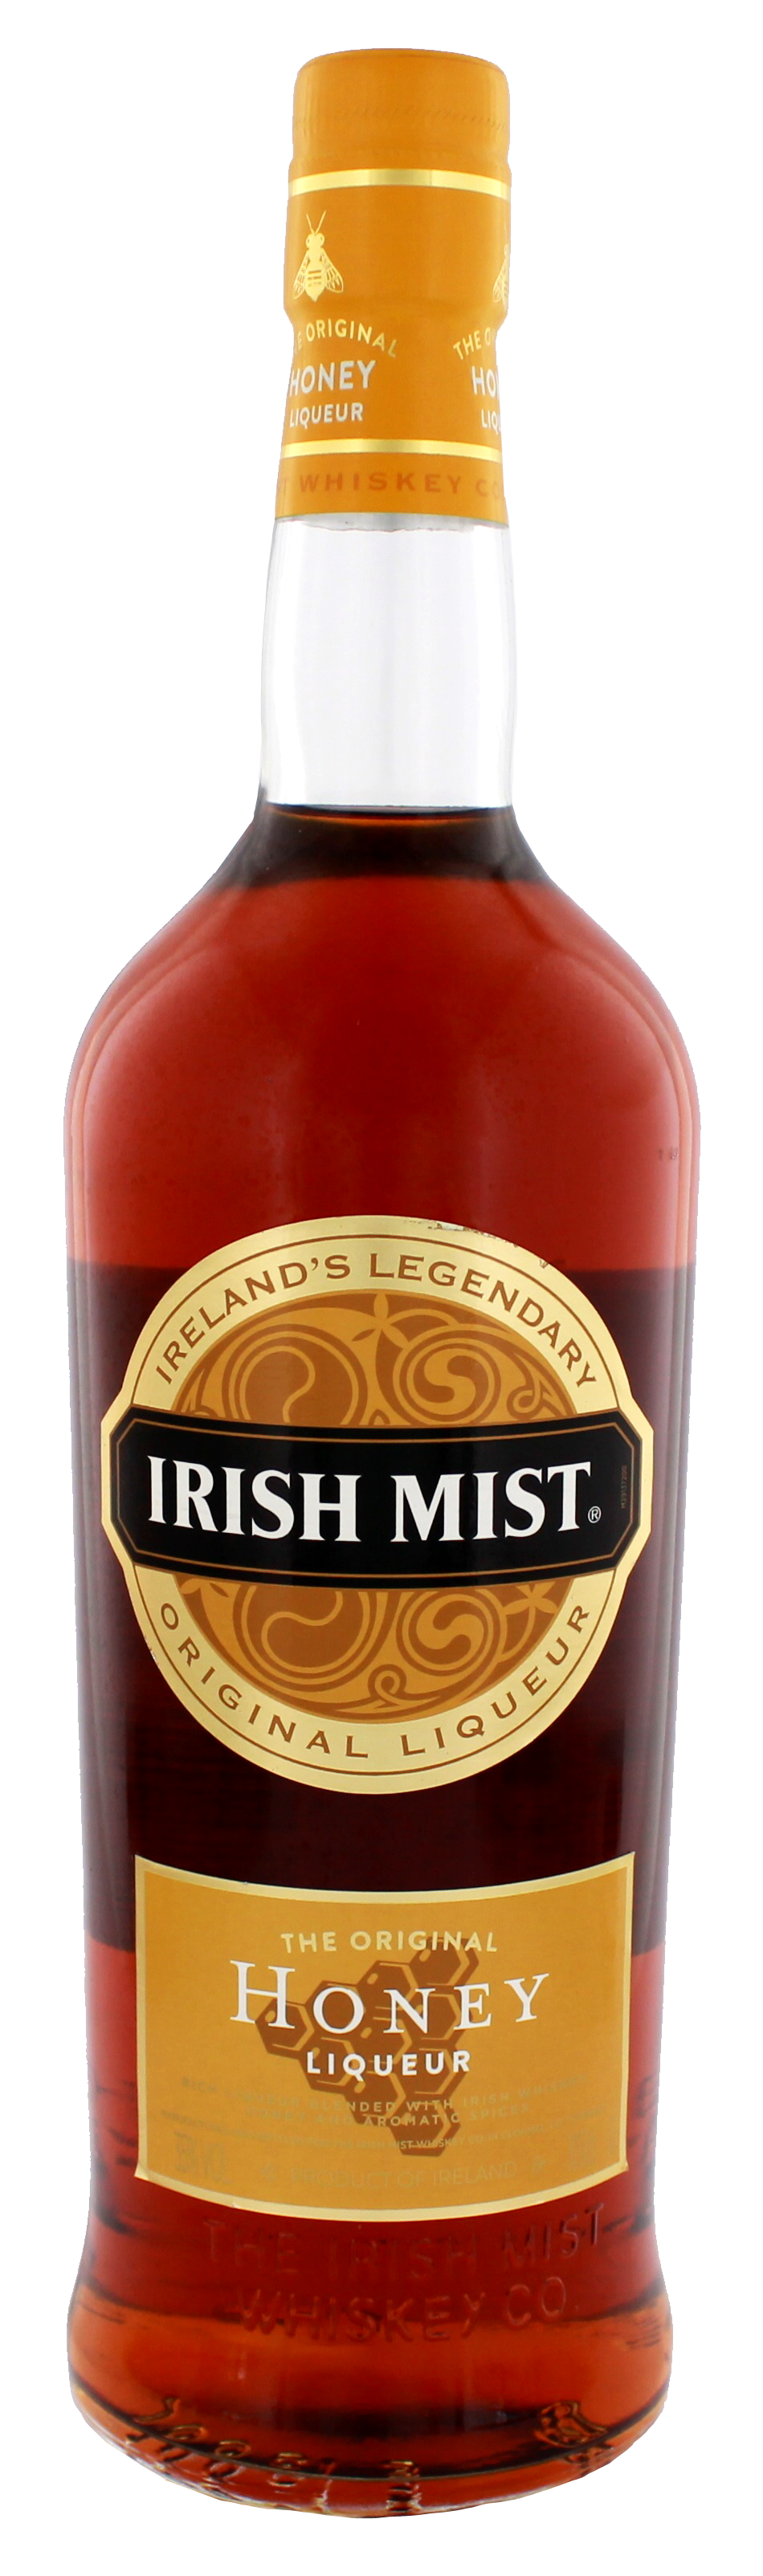 Irish Mist Whiskey Liqueur jetzt Drinkology Shop! kaufen im Online